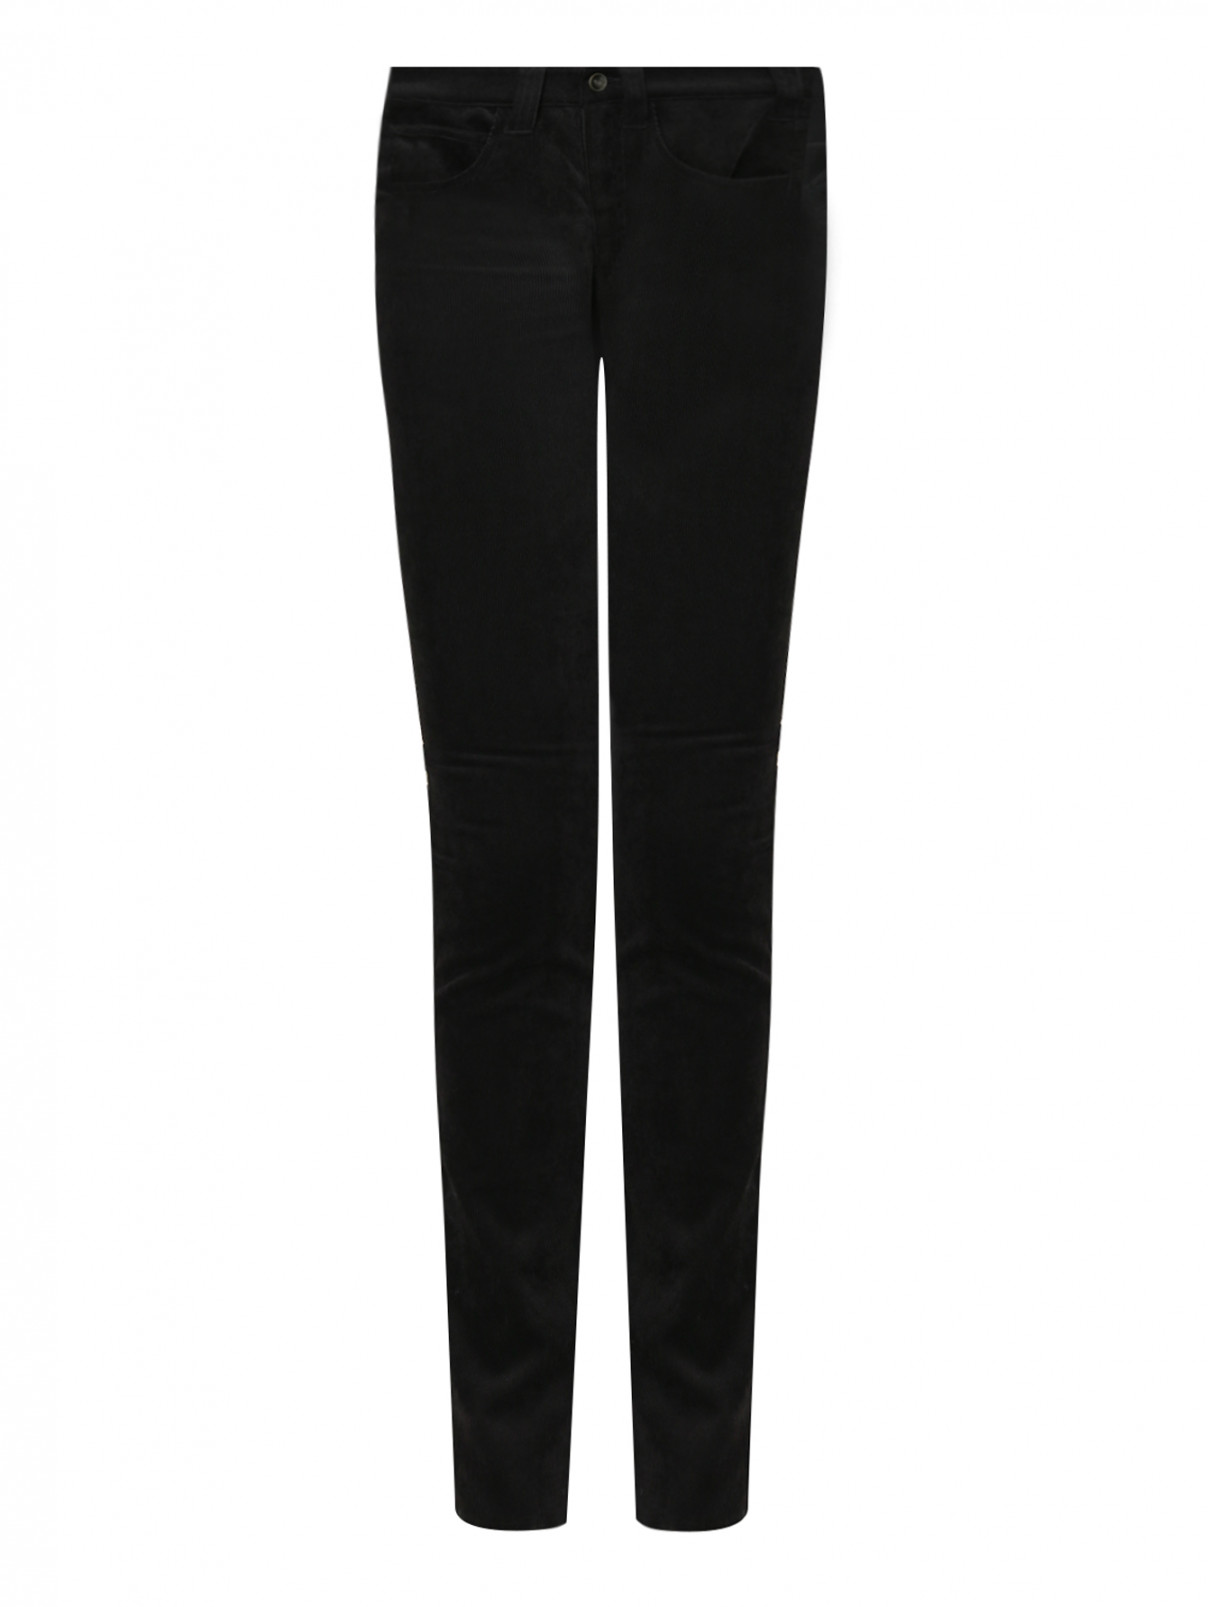 Брюки вельветовые прямого кроя Armani Jeans  –  Общий вид  – Цвет:  Черный